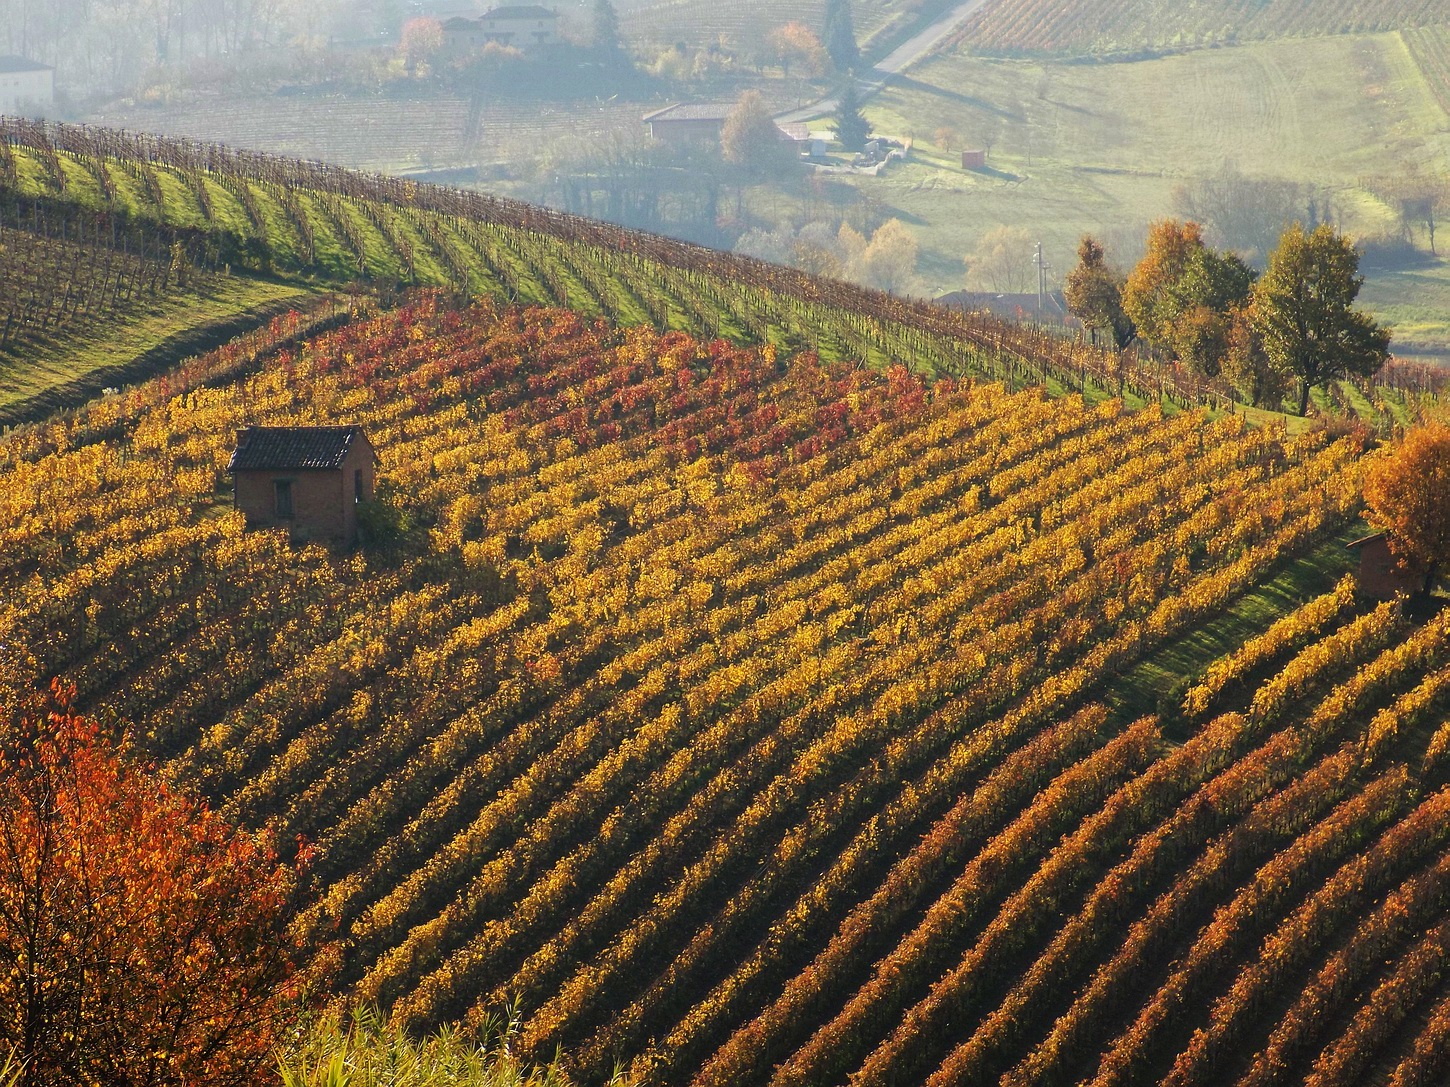 The vineyard autumn...